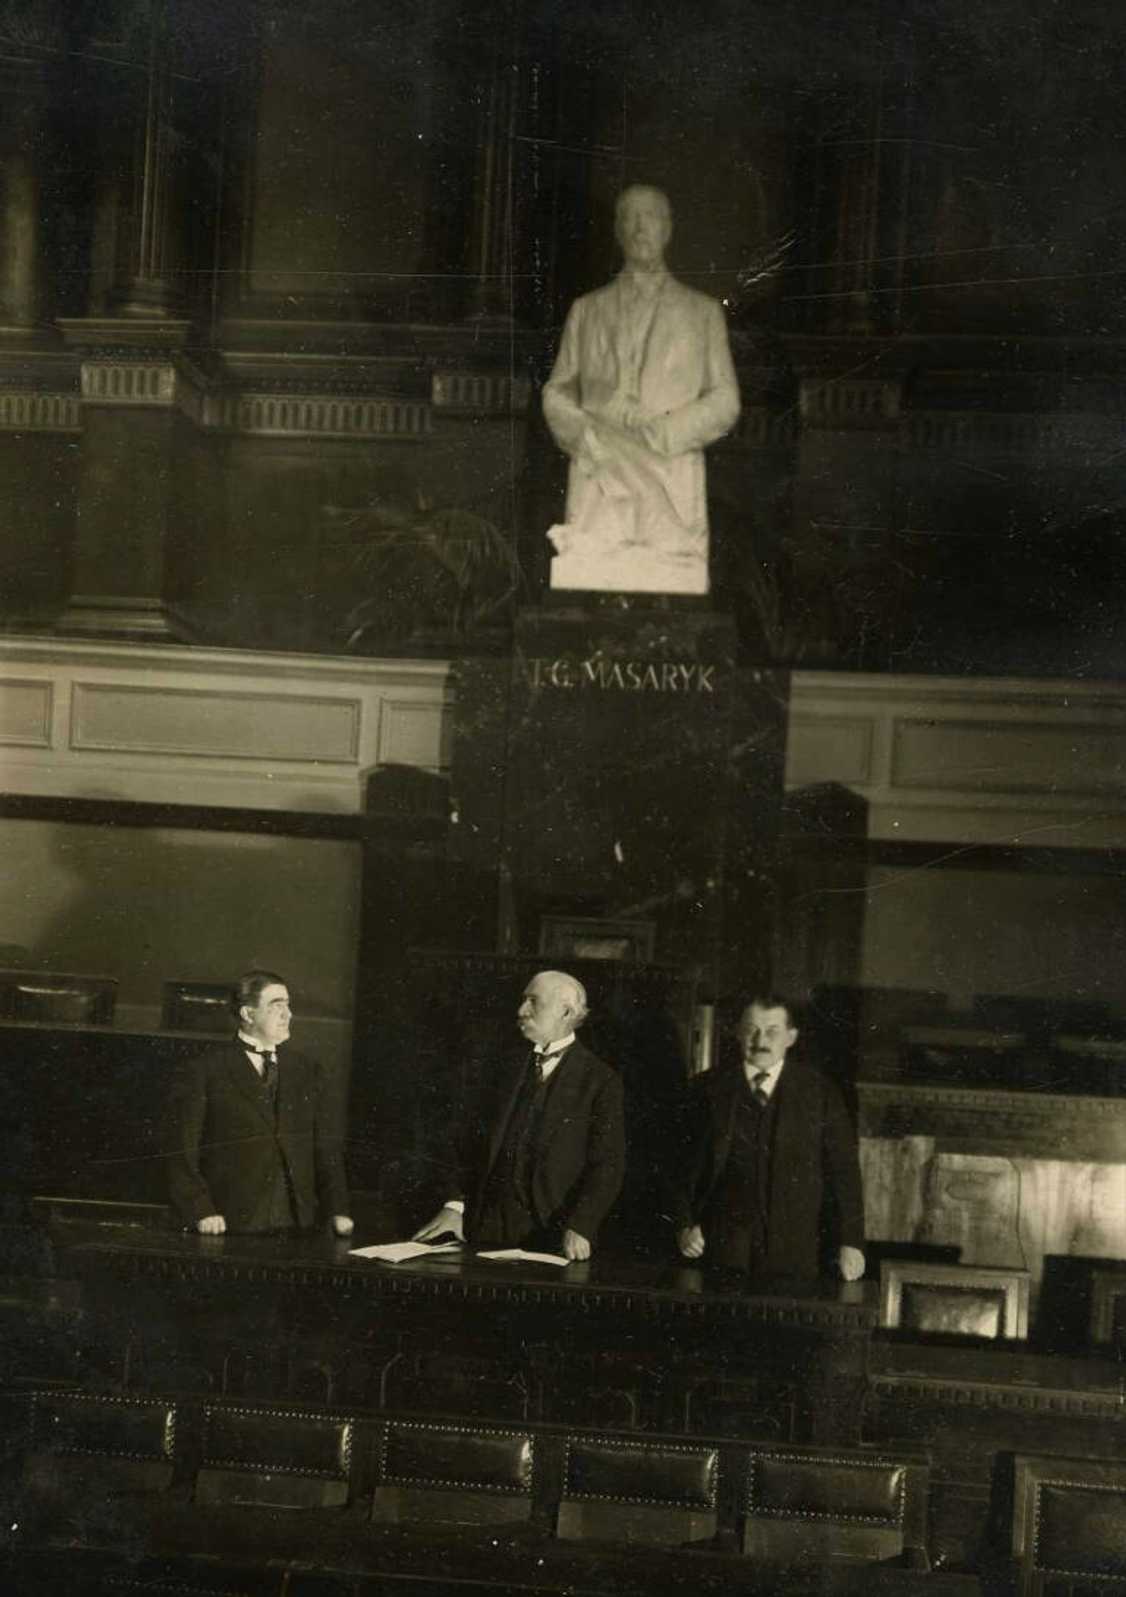 Odhalení sochy T.G. Masaryka v zasedacím sále poslanecké sněmovny Národního shromáždění v Rudolfinu (1922)
